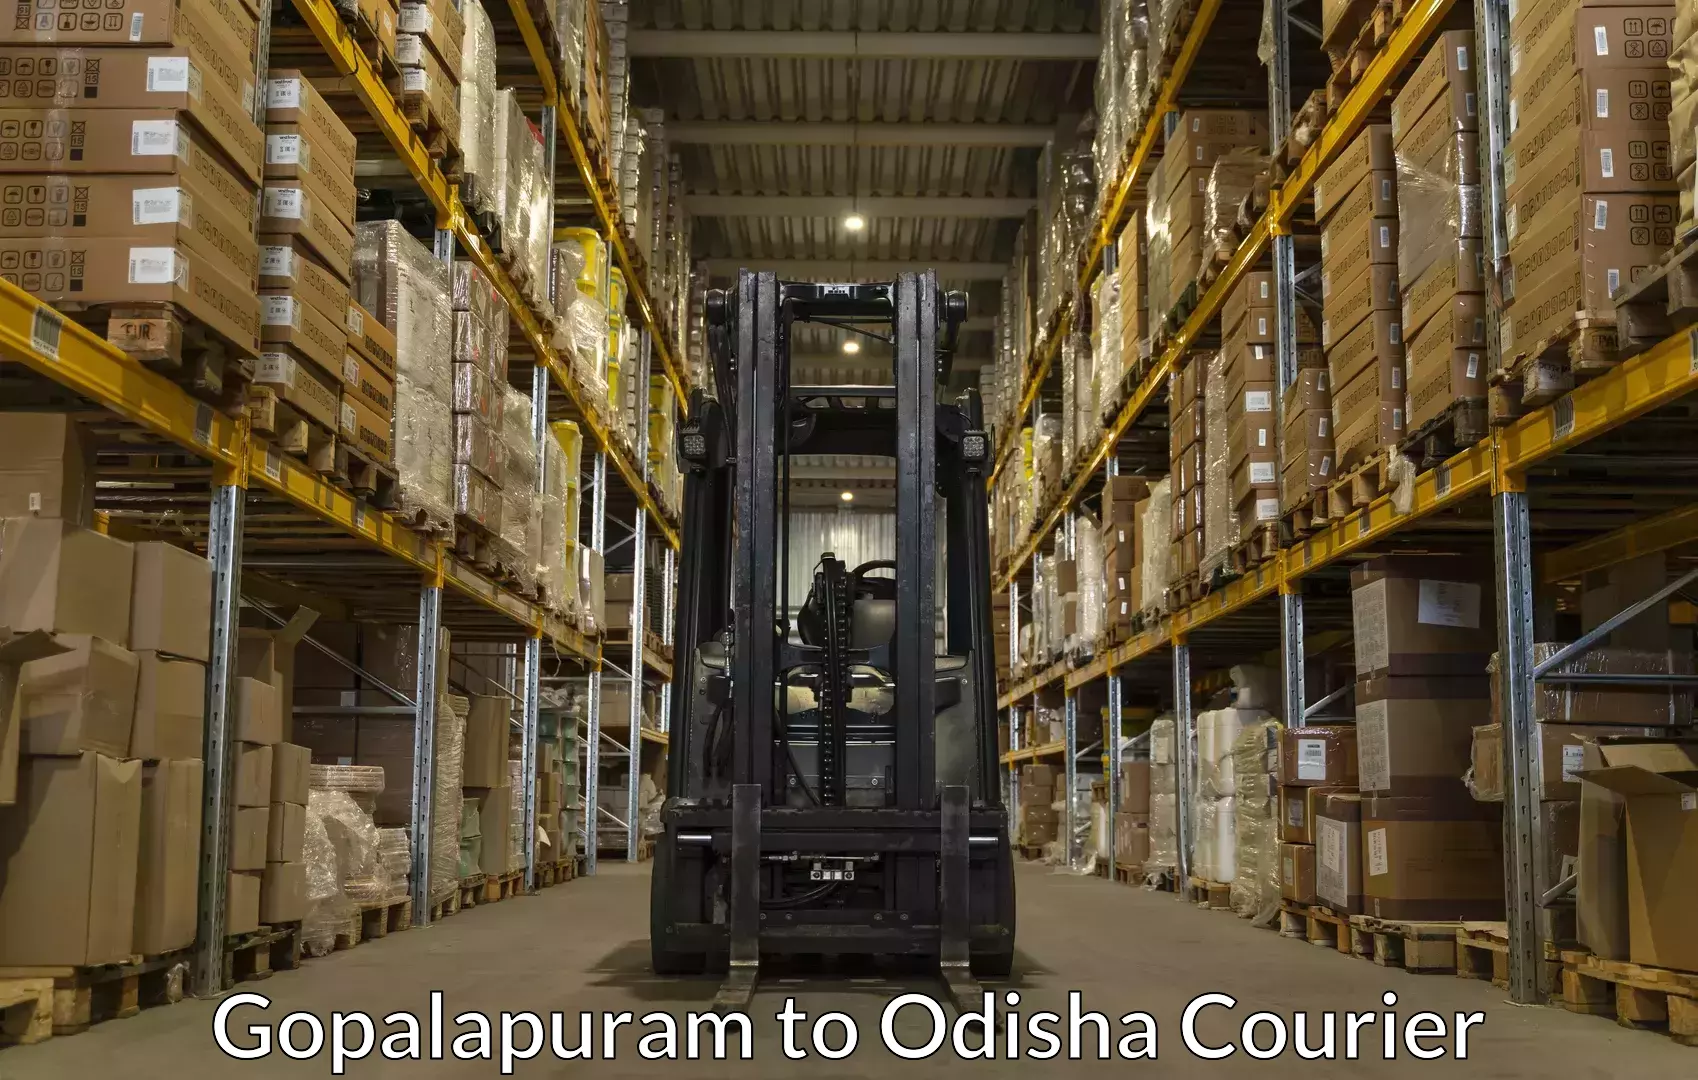 Furniture moving experts Gopalapuram to Odisha